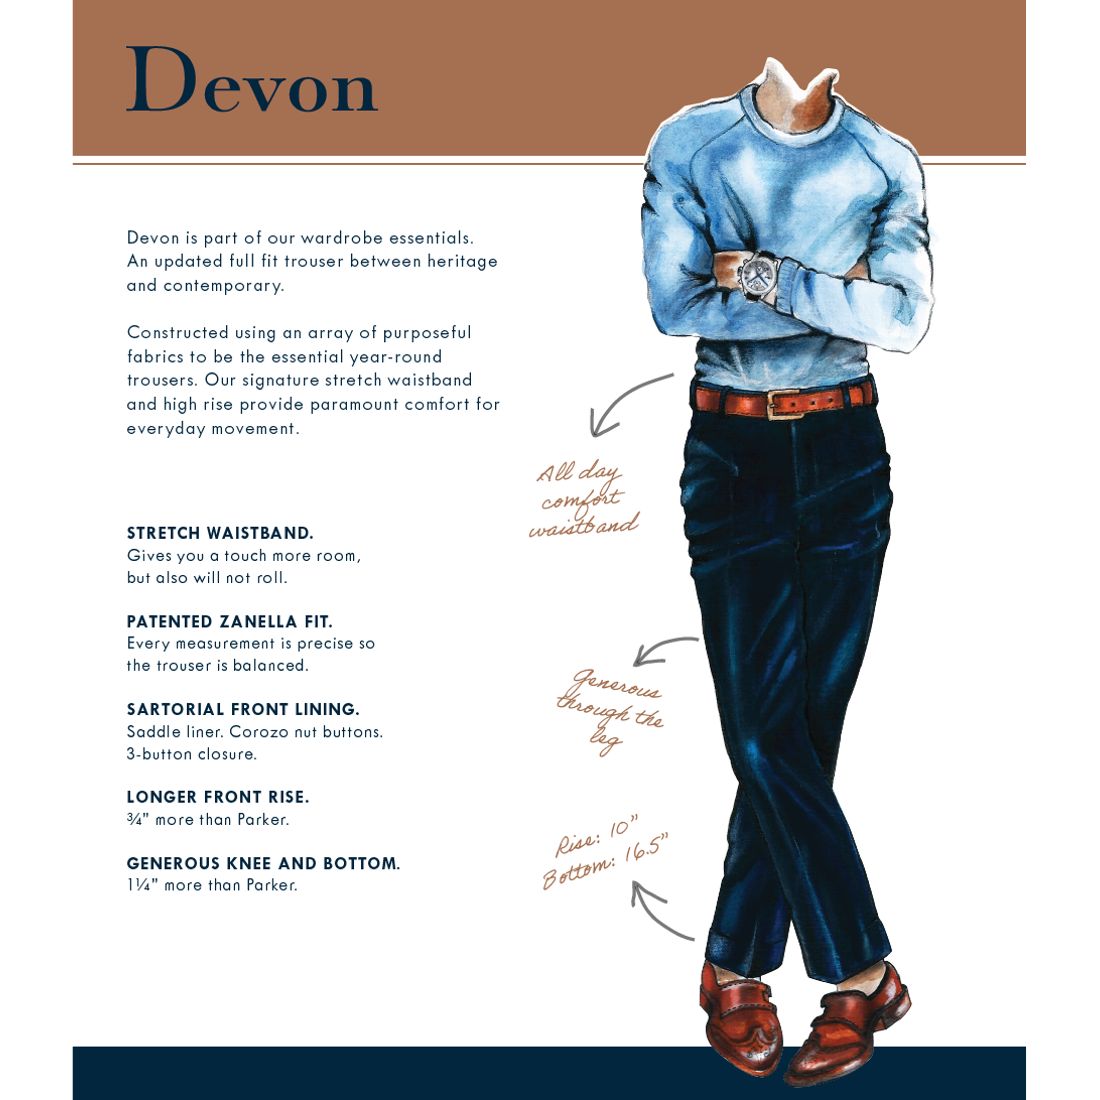 Devon Flat Front Stretch Wool Trouser in Black (Modern Full Fit) by Zanella